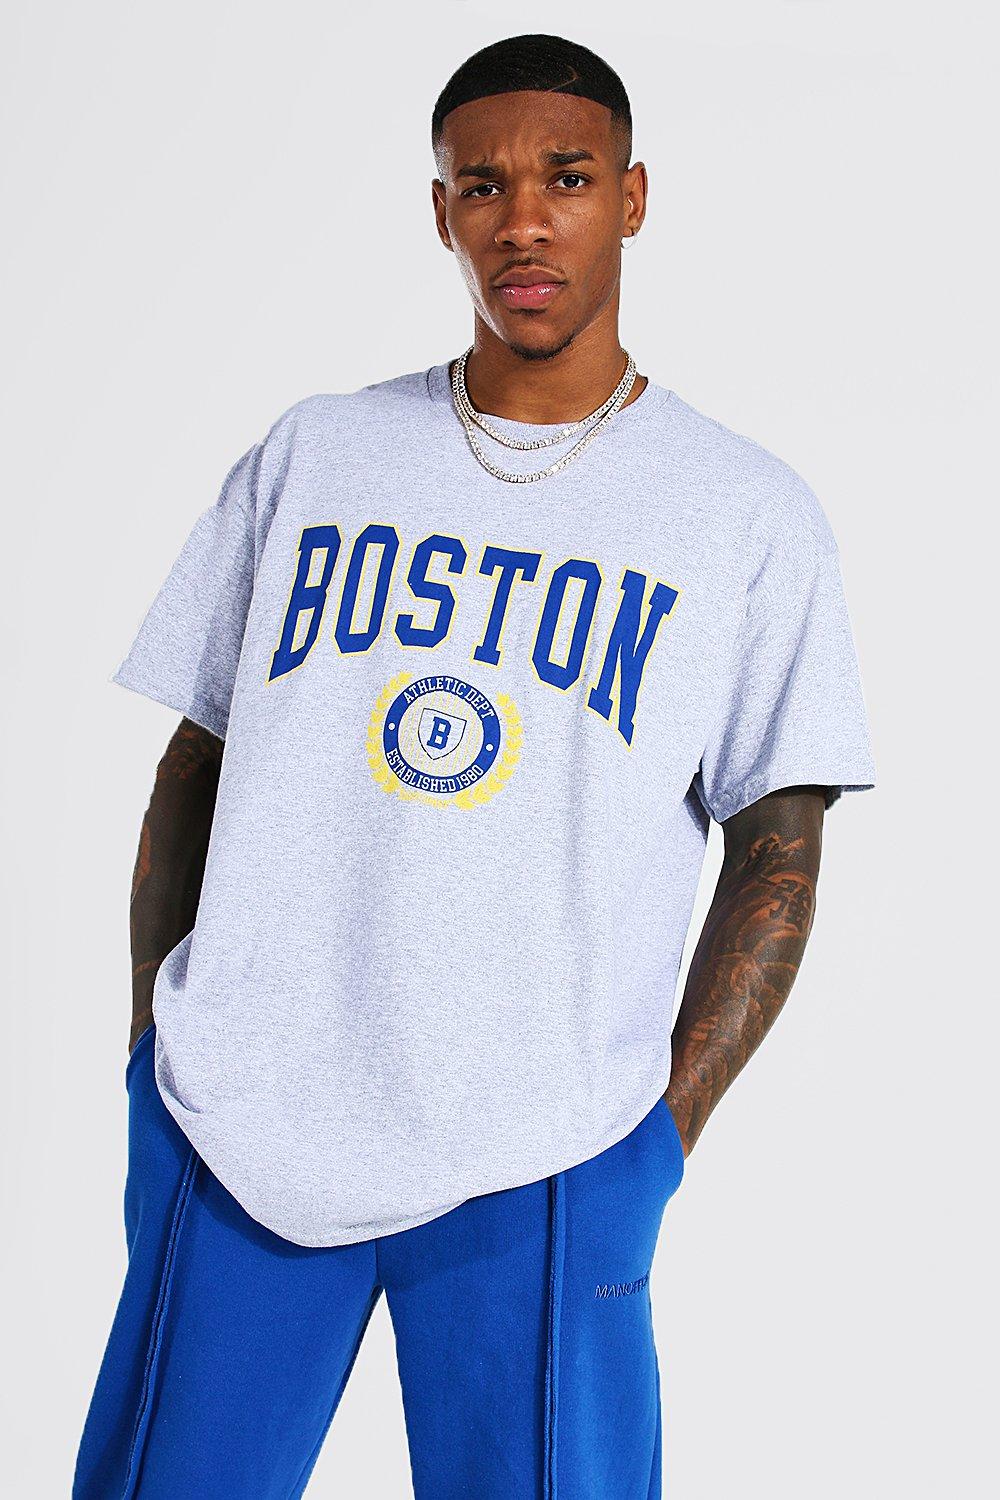 Boston Men's T-shirt